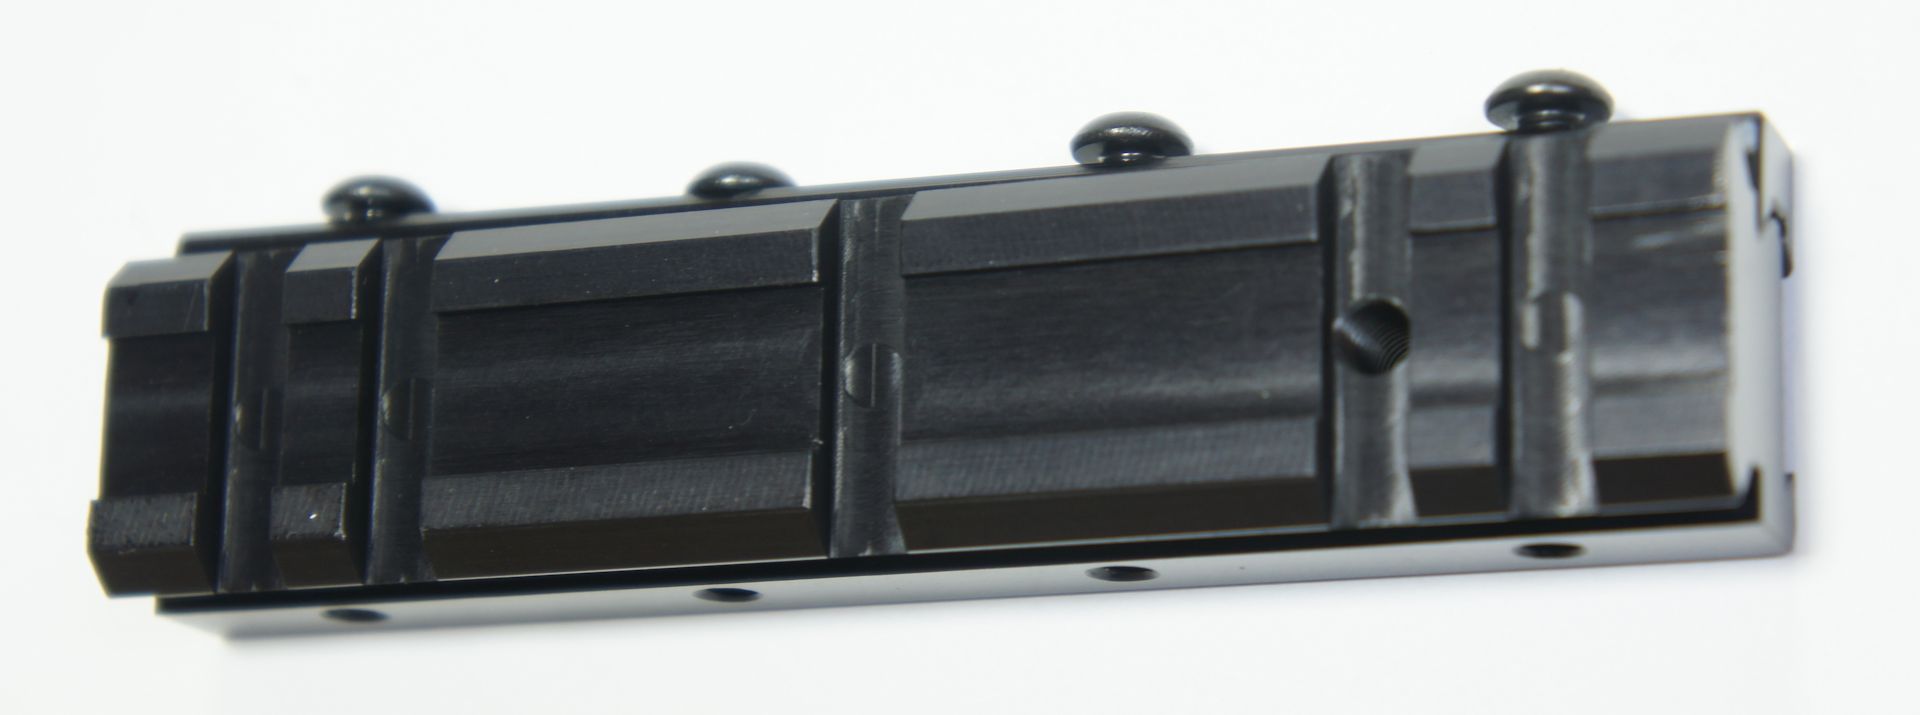 Przisionsadapter von 11mm auf 21mm Weaver- Standard